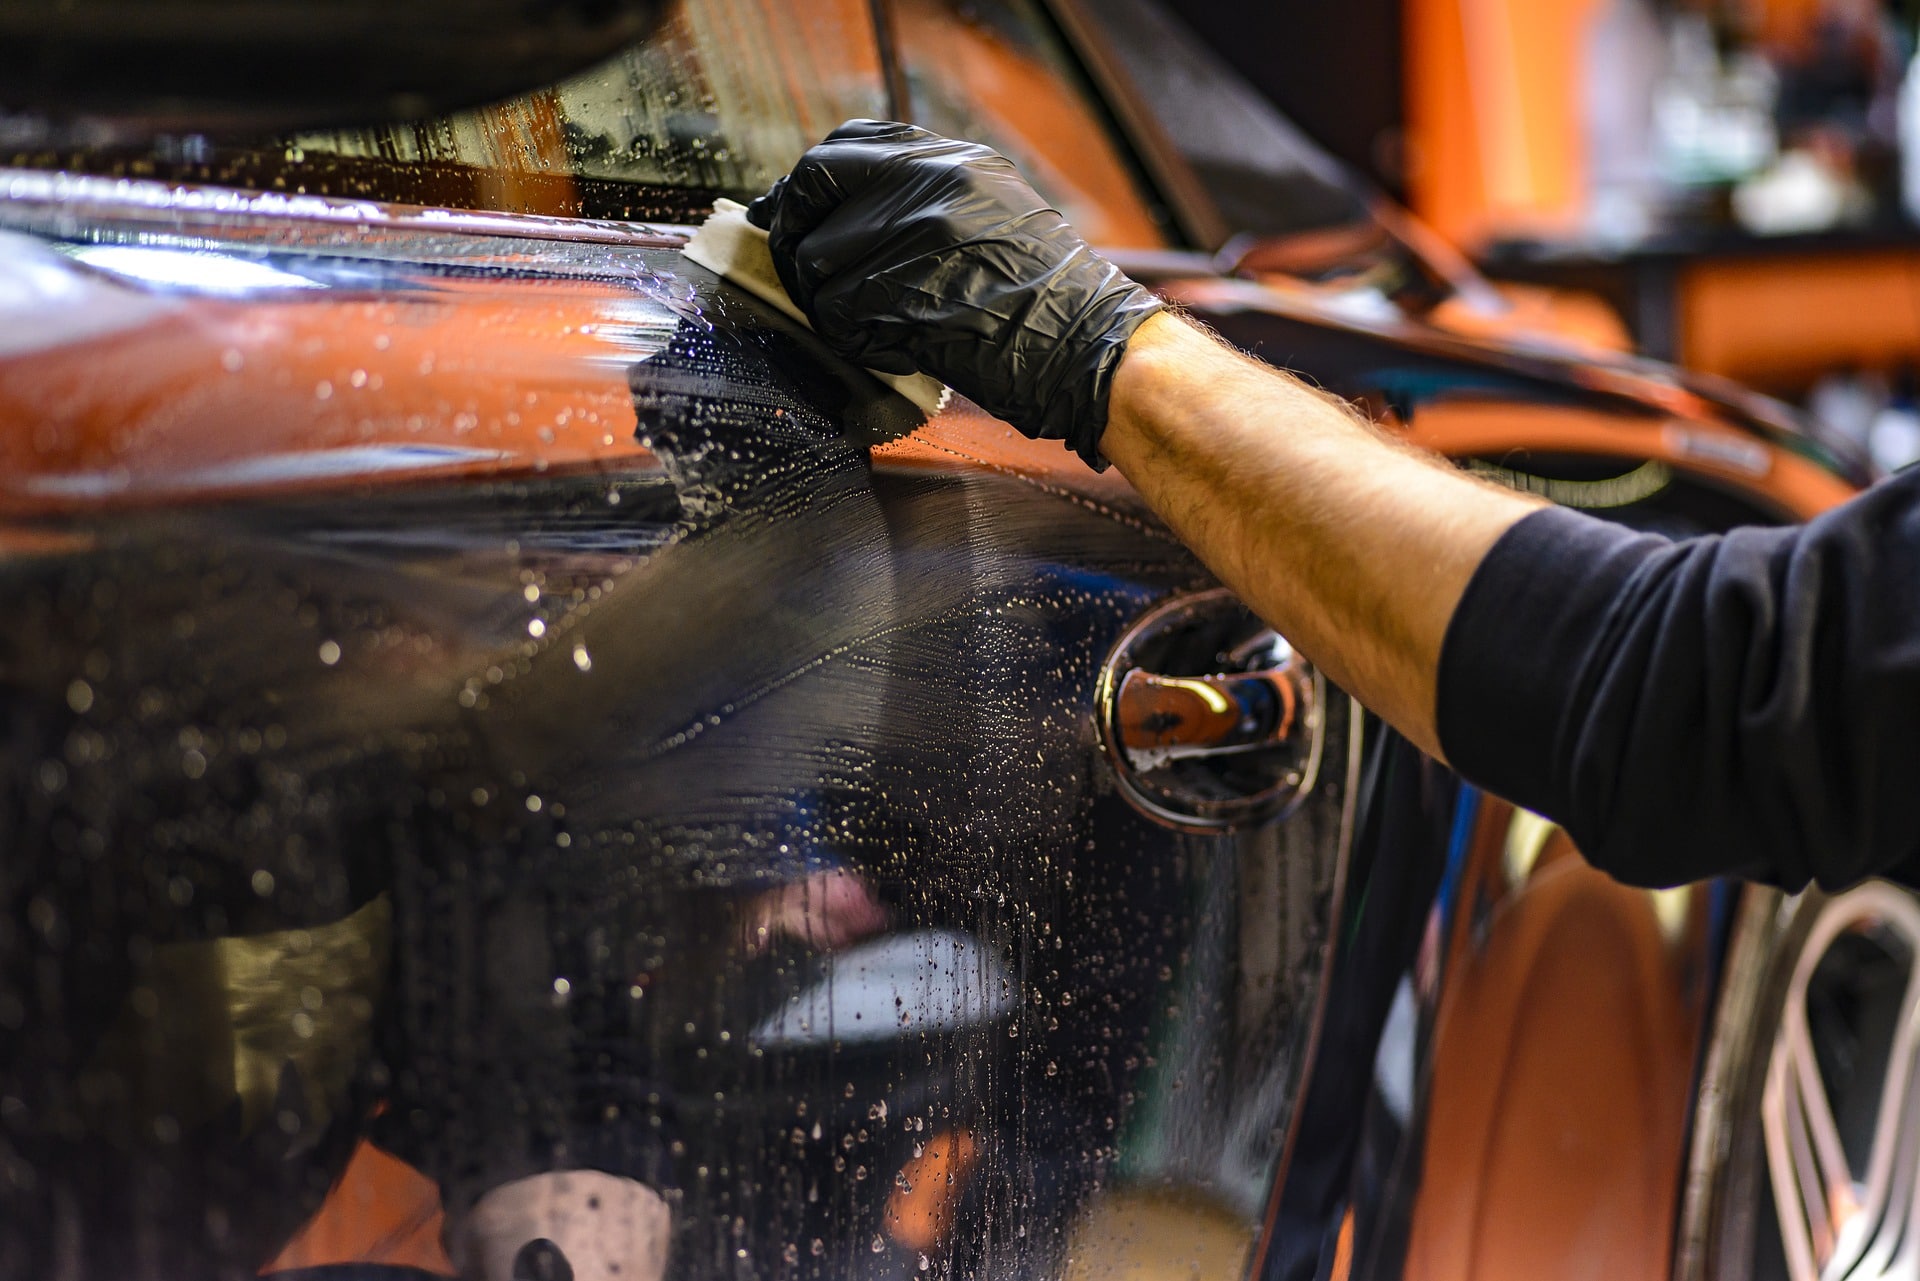 Uma pessoa limpando a lateral de um carro preto. Imagem ilustrativa do texto sobre lavagem técnica automotiva.